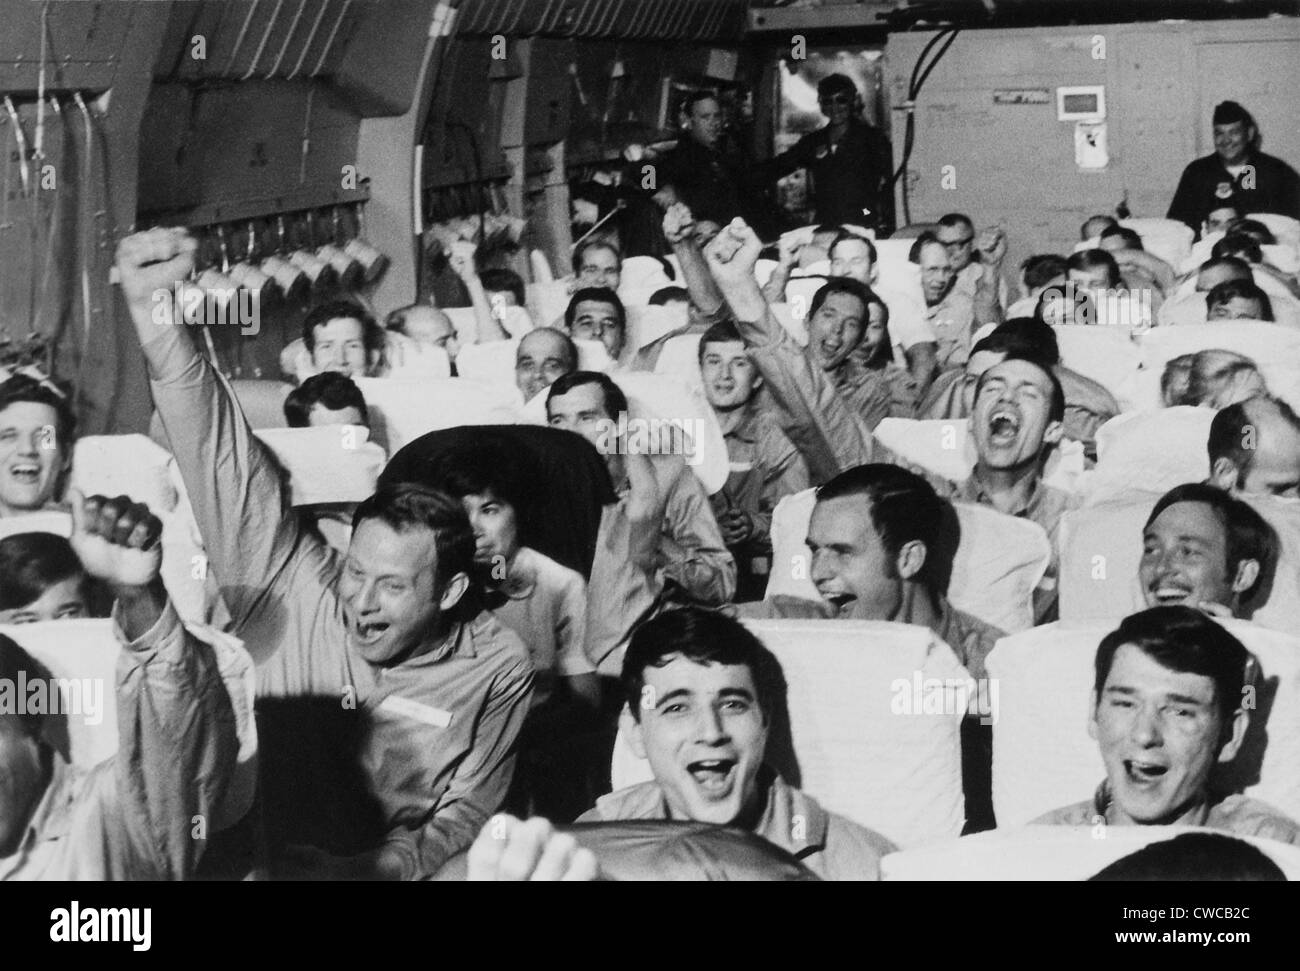 Jubelnde amerikanischen Kriegsgefangenen. Amerikanische Soldaten jubeln, als ihr Flugzeug von einem Flugplatz in der Nähe von Hanoi nach ihrer Freilassung startet Stockfoto